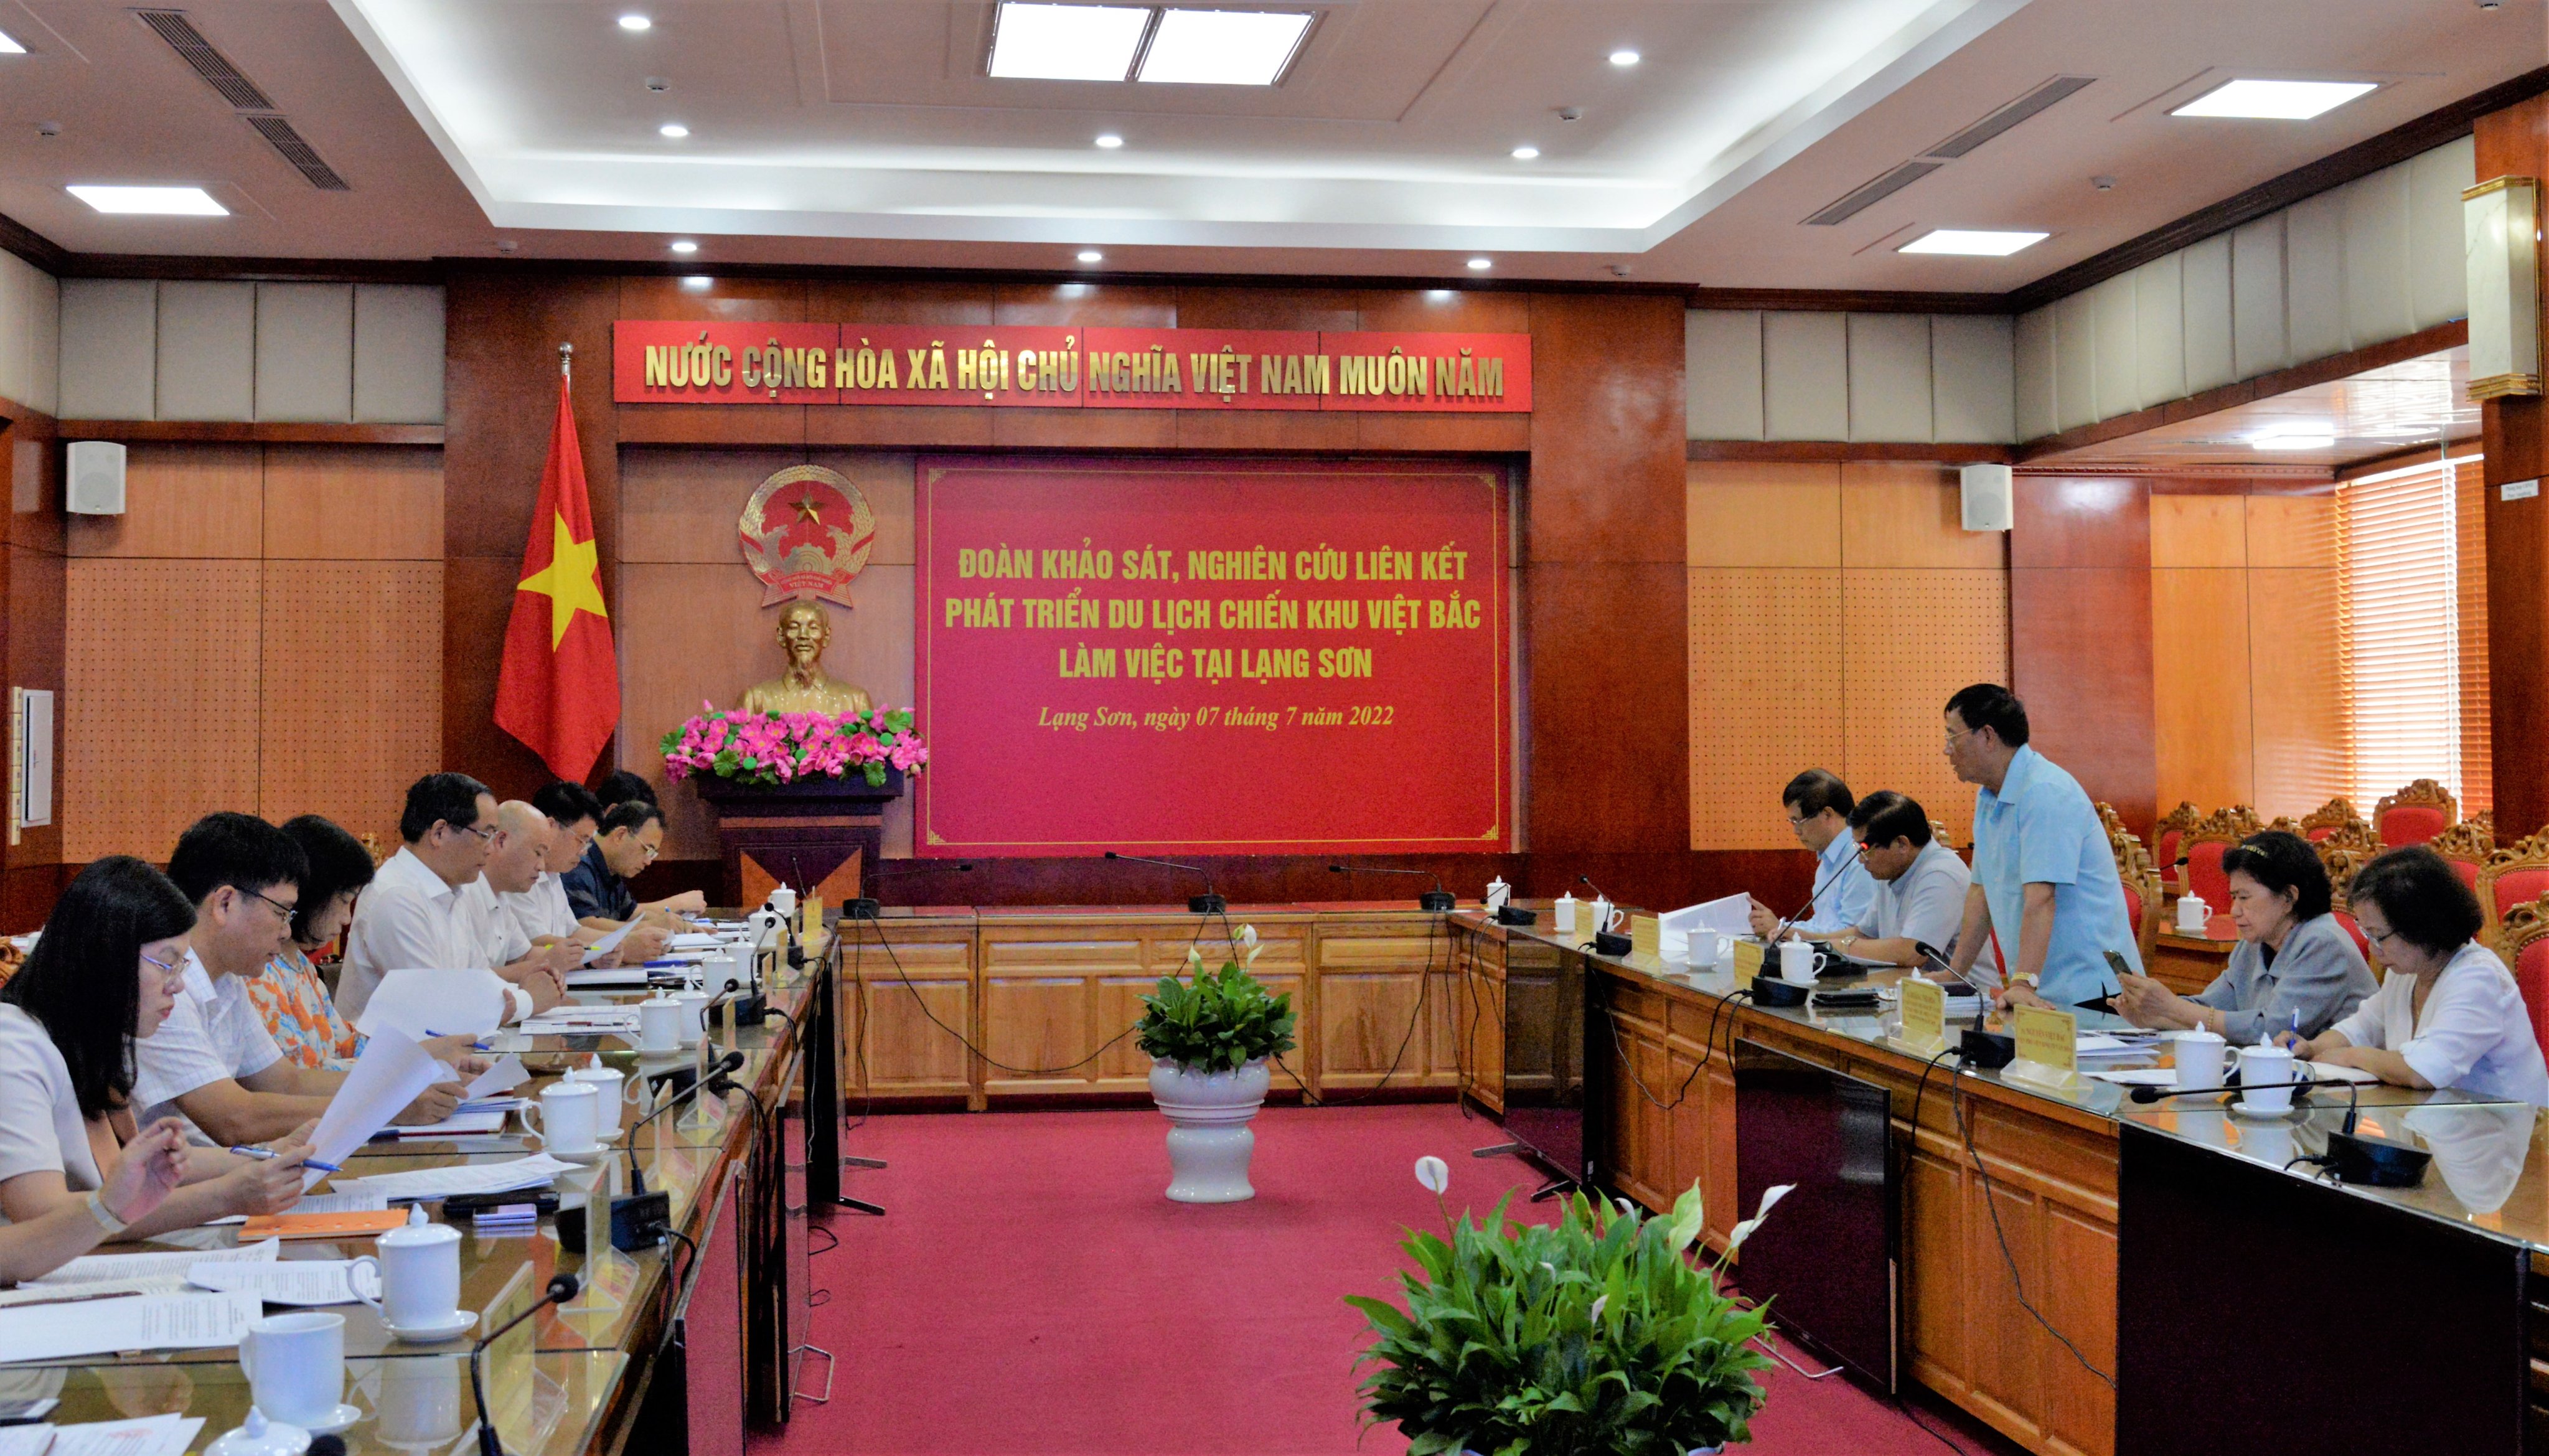 Đón tiếp và làm việc với Đoàn khảo sát, nghiên cứu Liên kết phát triển du lịch Chiến khu Việt Bắc tại Lạng Sơn